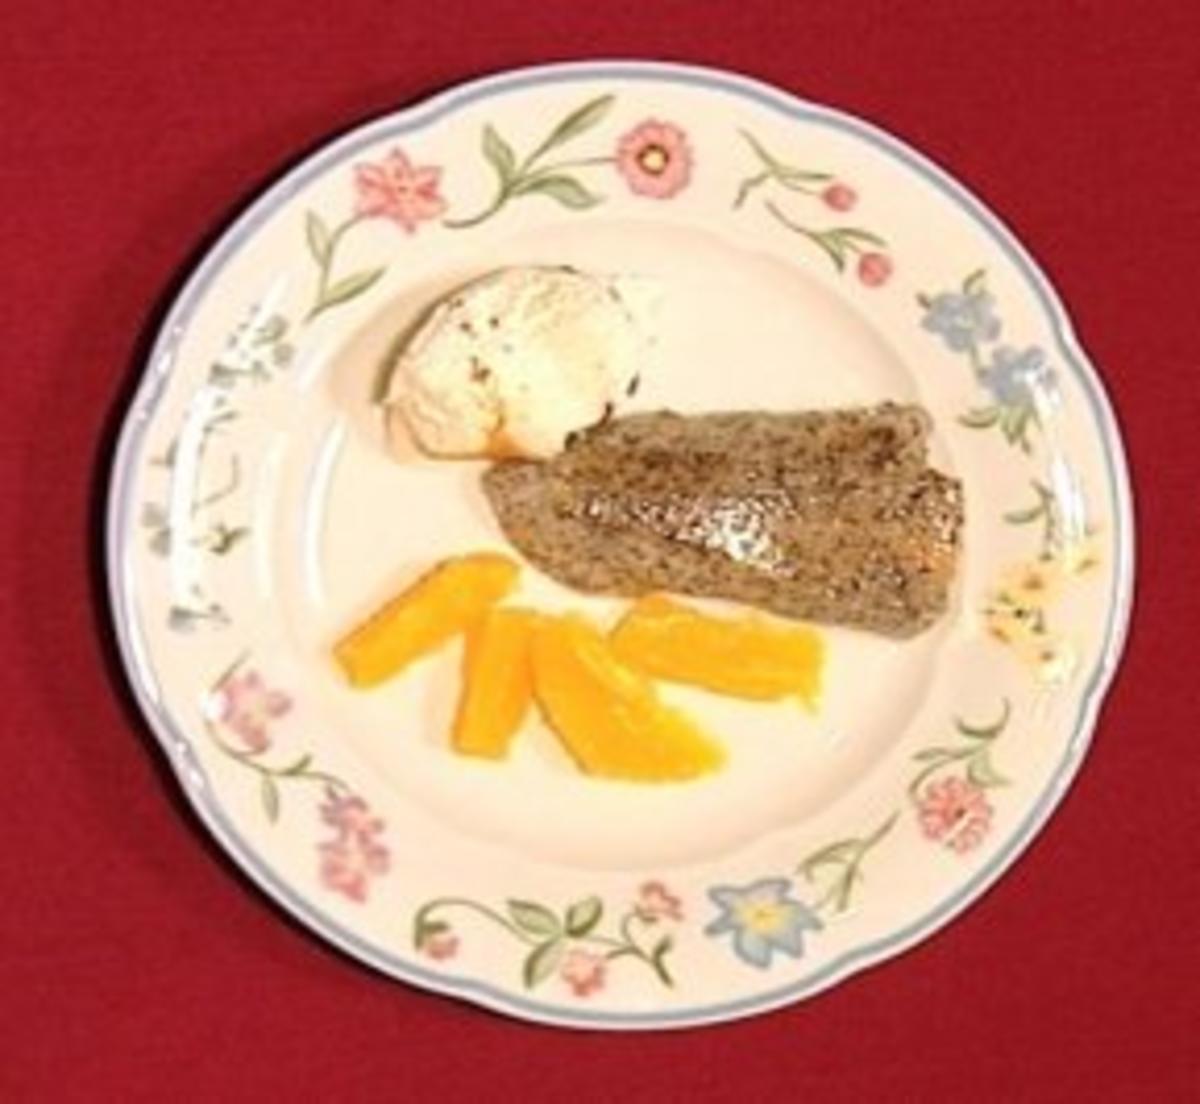 Warme Mohntarte mit Orangensalat und Walnusseis - Rezept - Bild Nr. 2